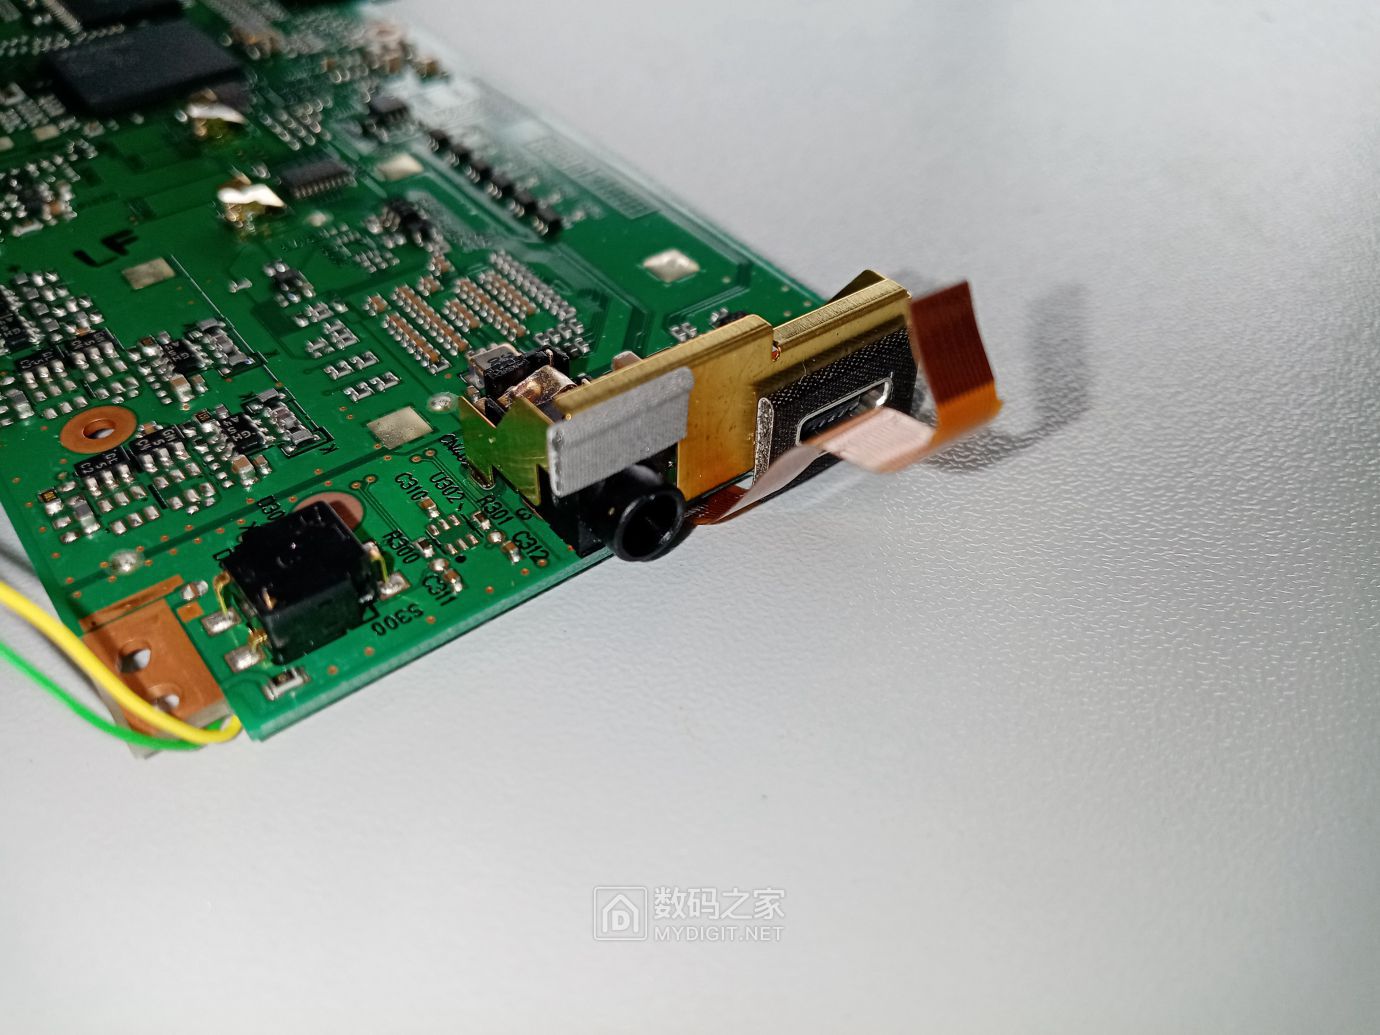 USB2.0接口及旁边的倾斜感应器